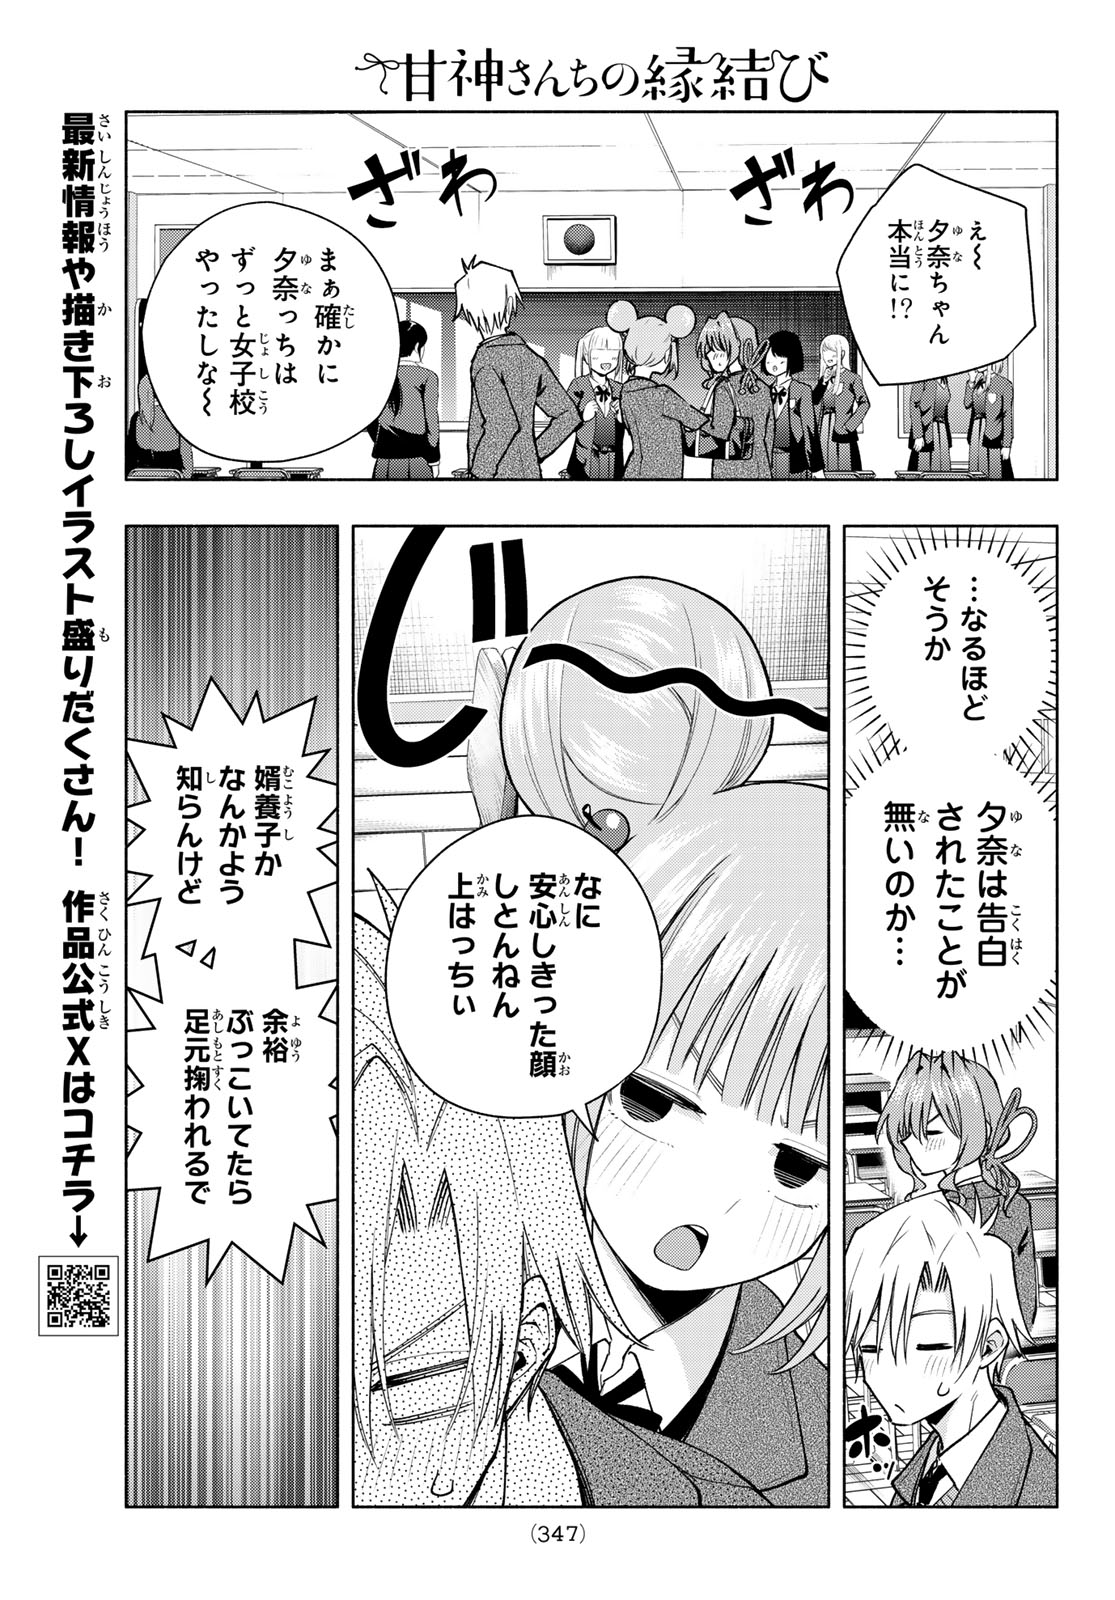 Amagami-san Chi no Enmusubi - Chapter 138 - Page 5